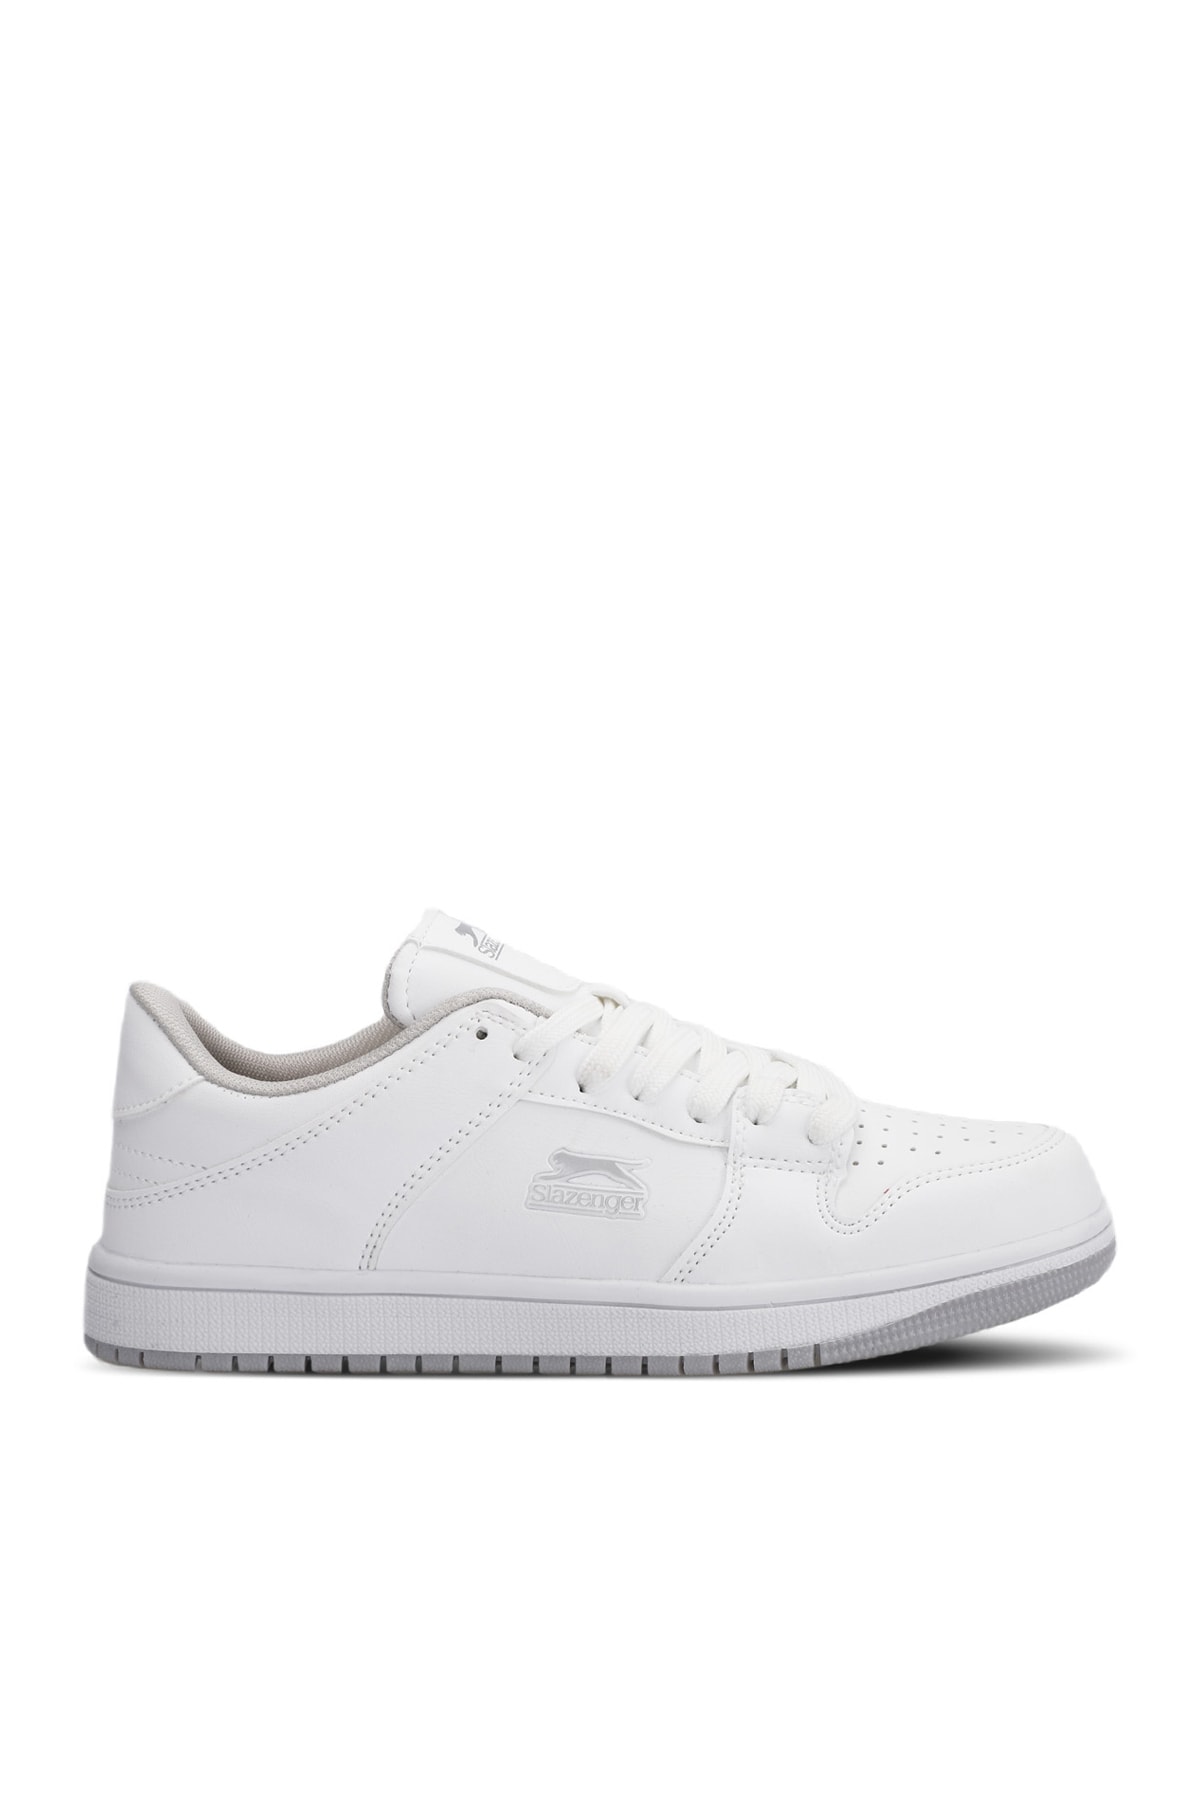 Slazenger LABOR Sneaker Women's Shoes White / White